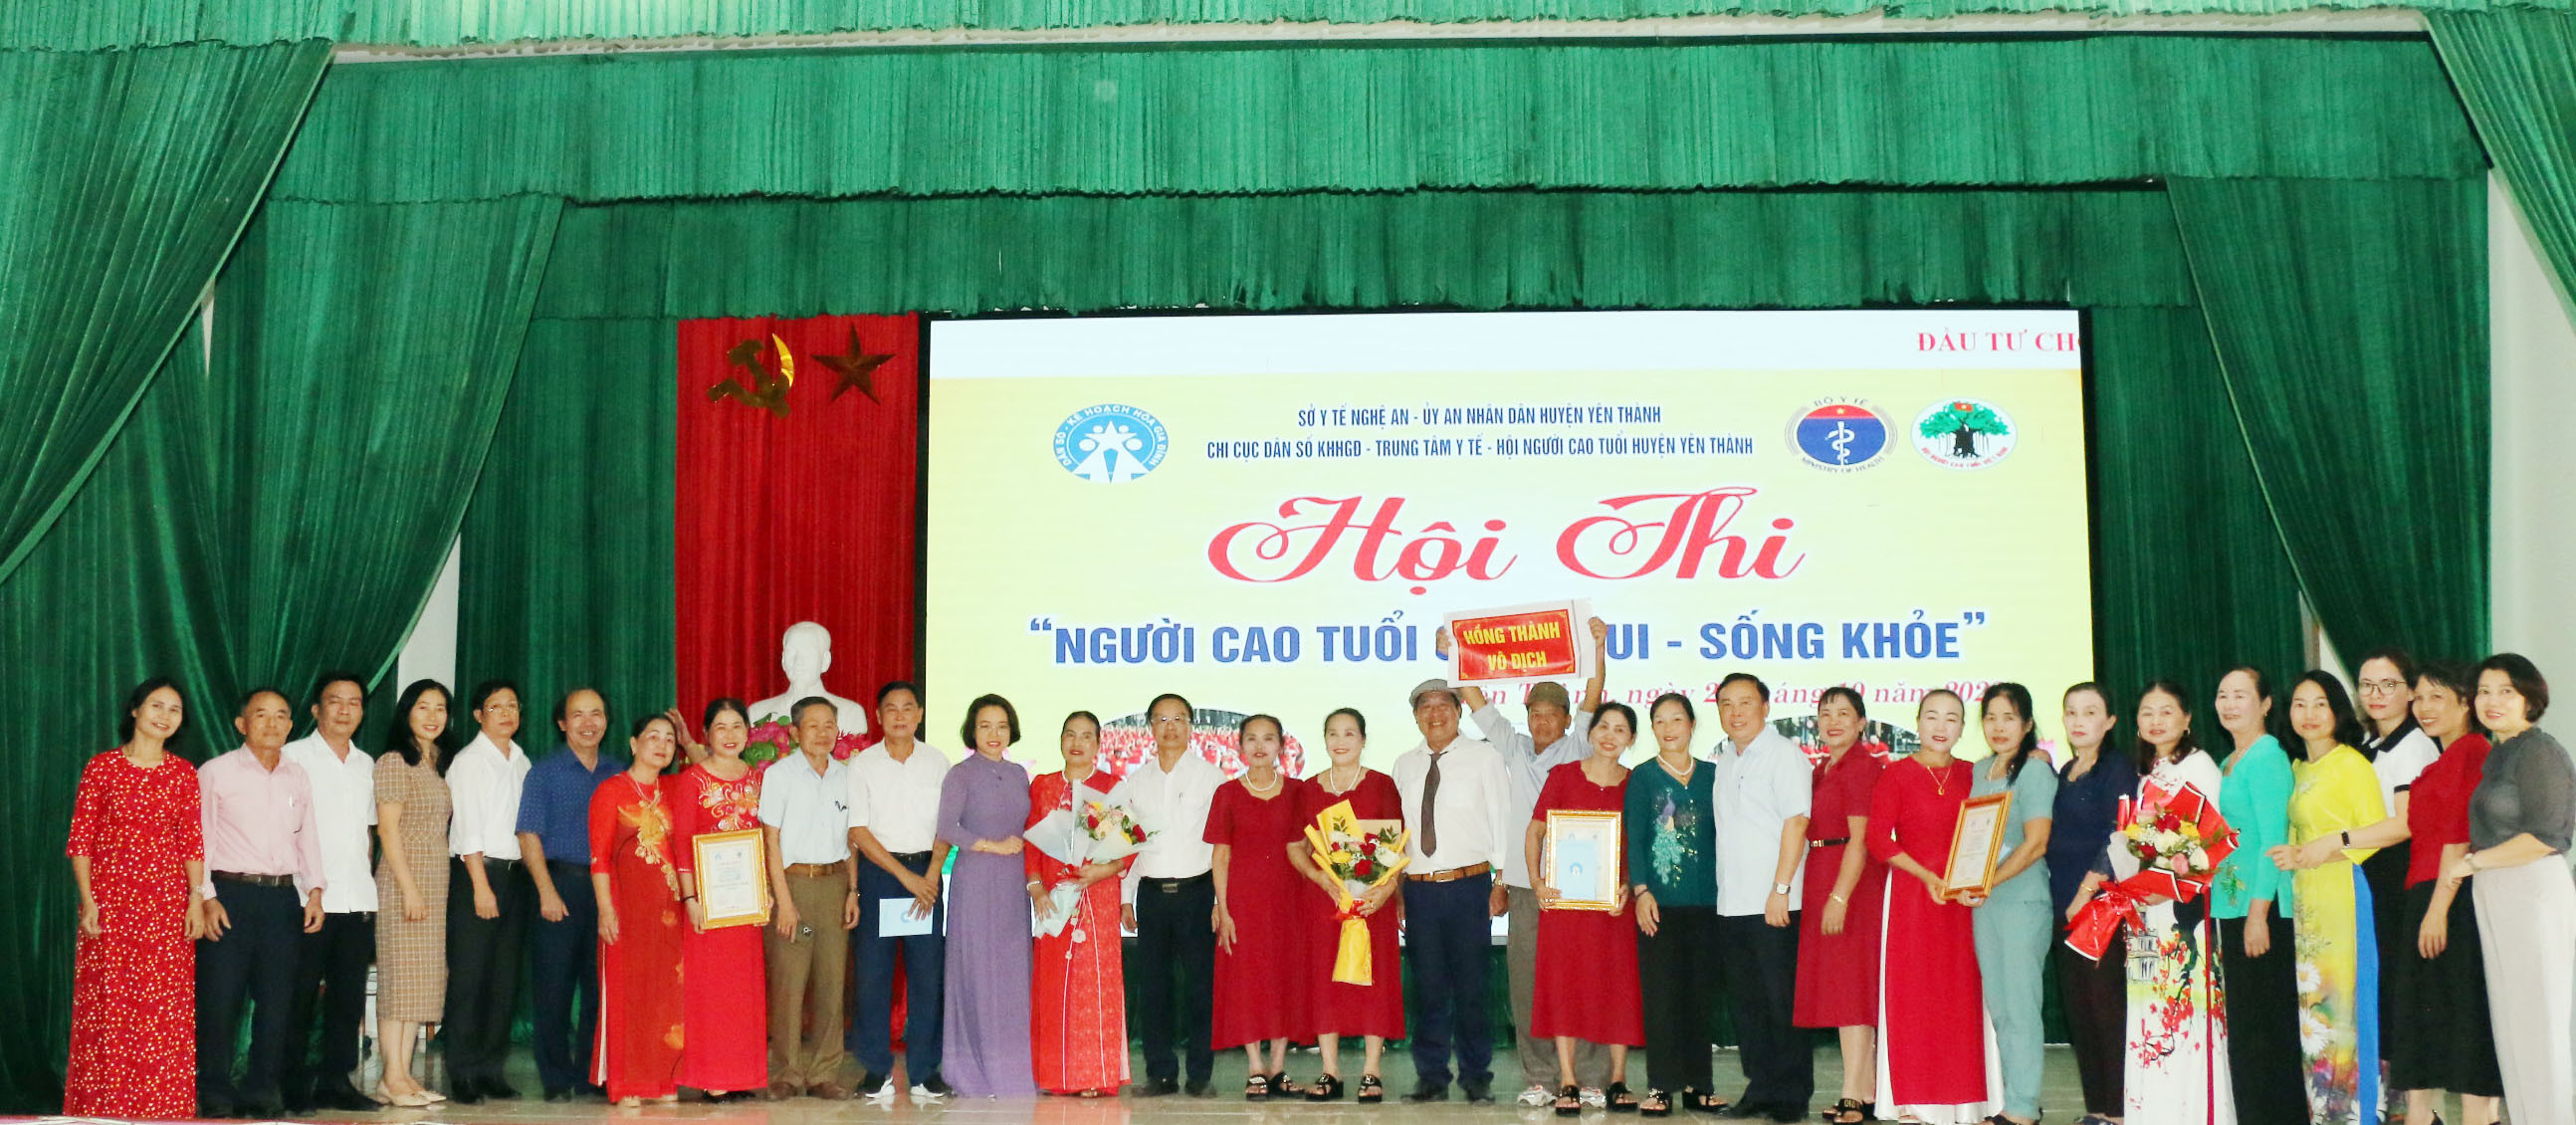 bna_Ban tổ chức trao giải Nhất cho đội đến từ xã Hồng Thành, giải ba xã Thọ Thành và giải nhì cho đội thi xã Phú Thành. Ảnh - Mỹ Hà.jpeg